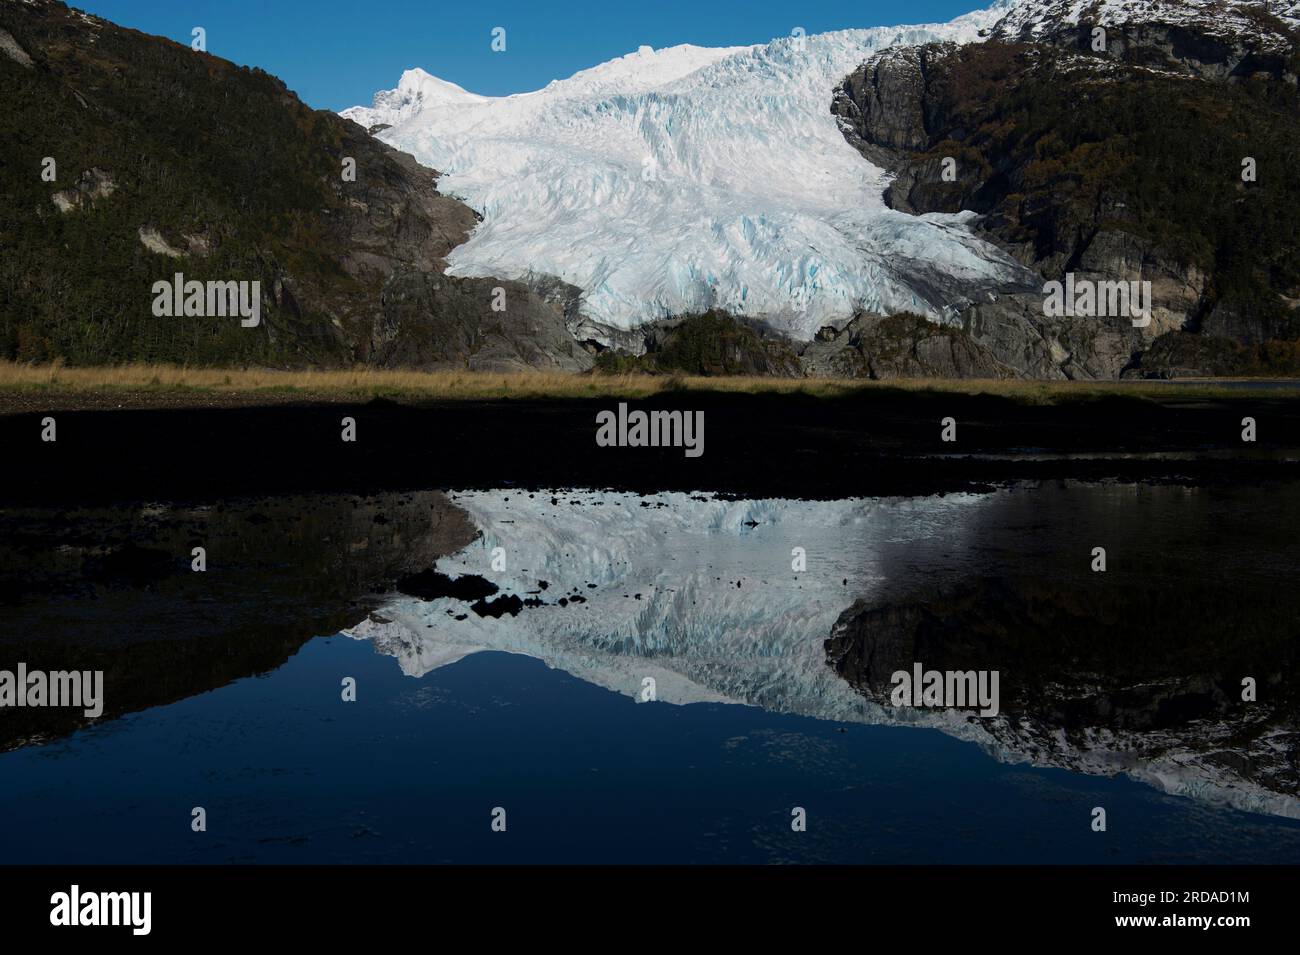 Reflection of Aguila Glacier in tidepool in Parque Nacional Alberto de Agostini in southern Chile Stock Photo